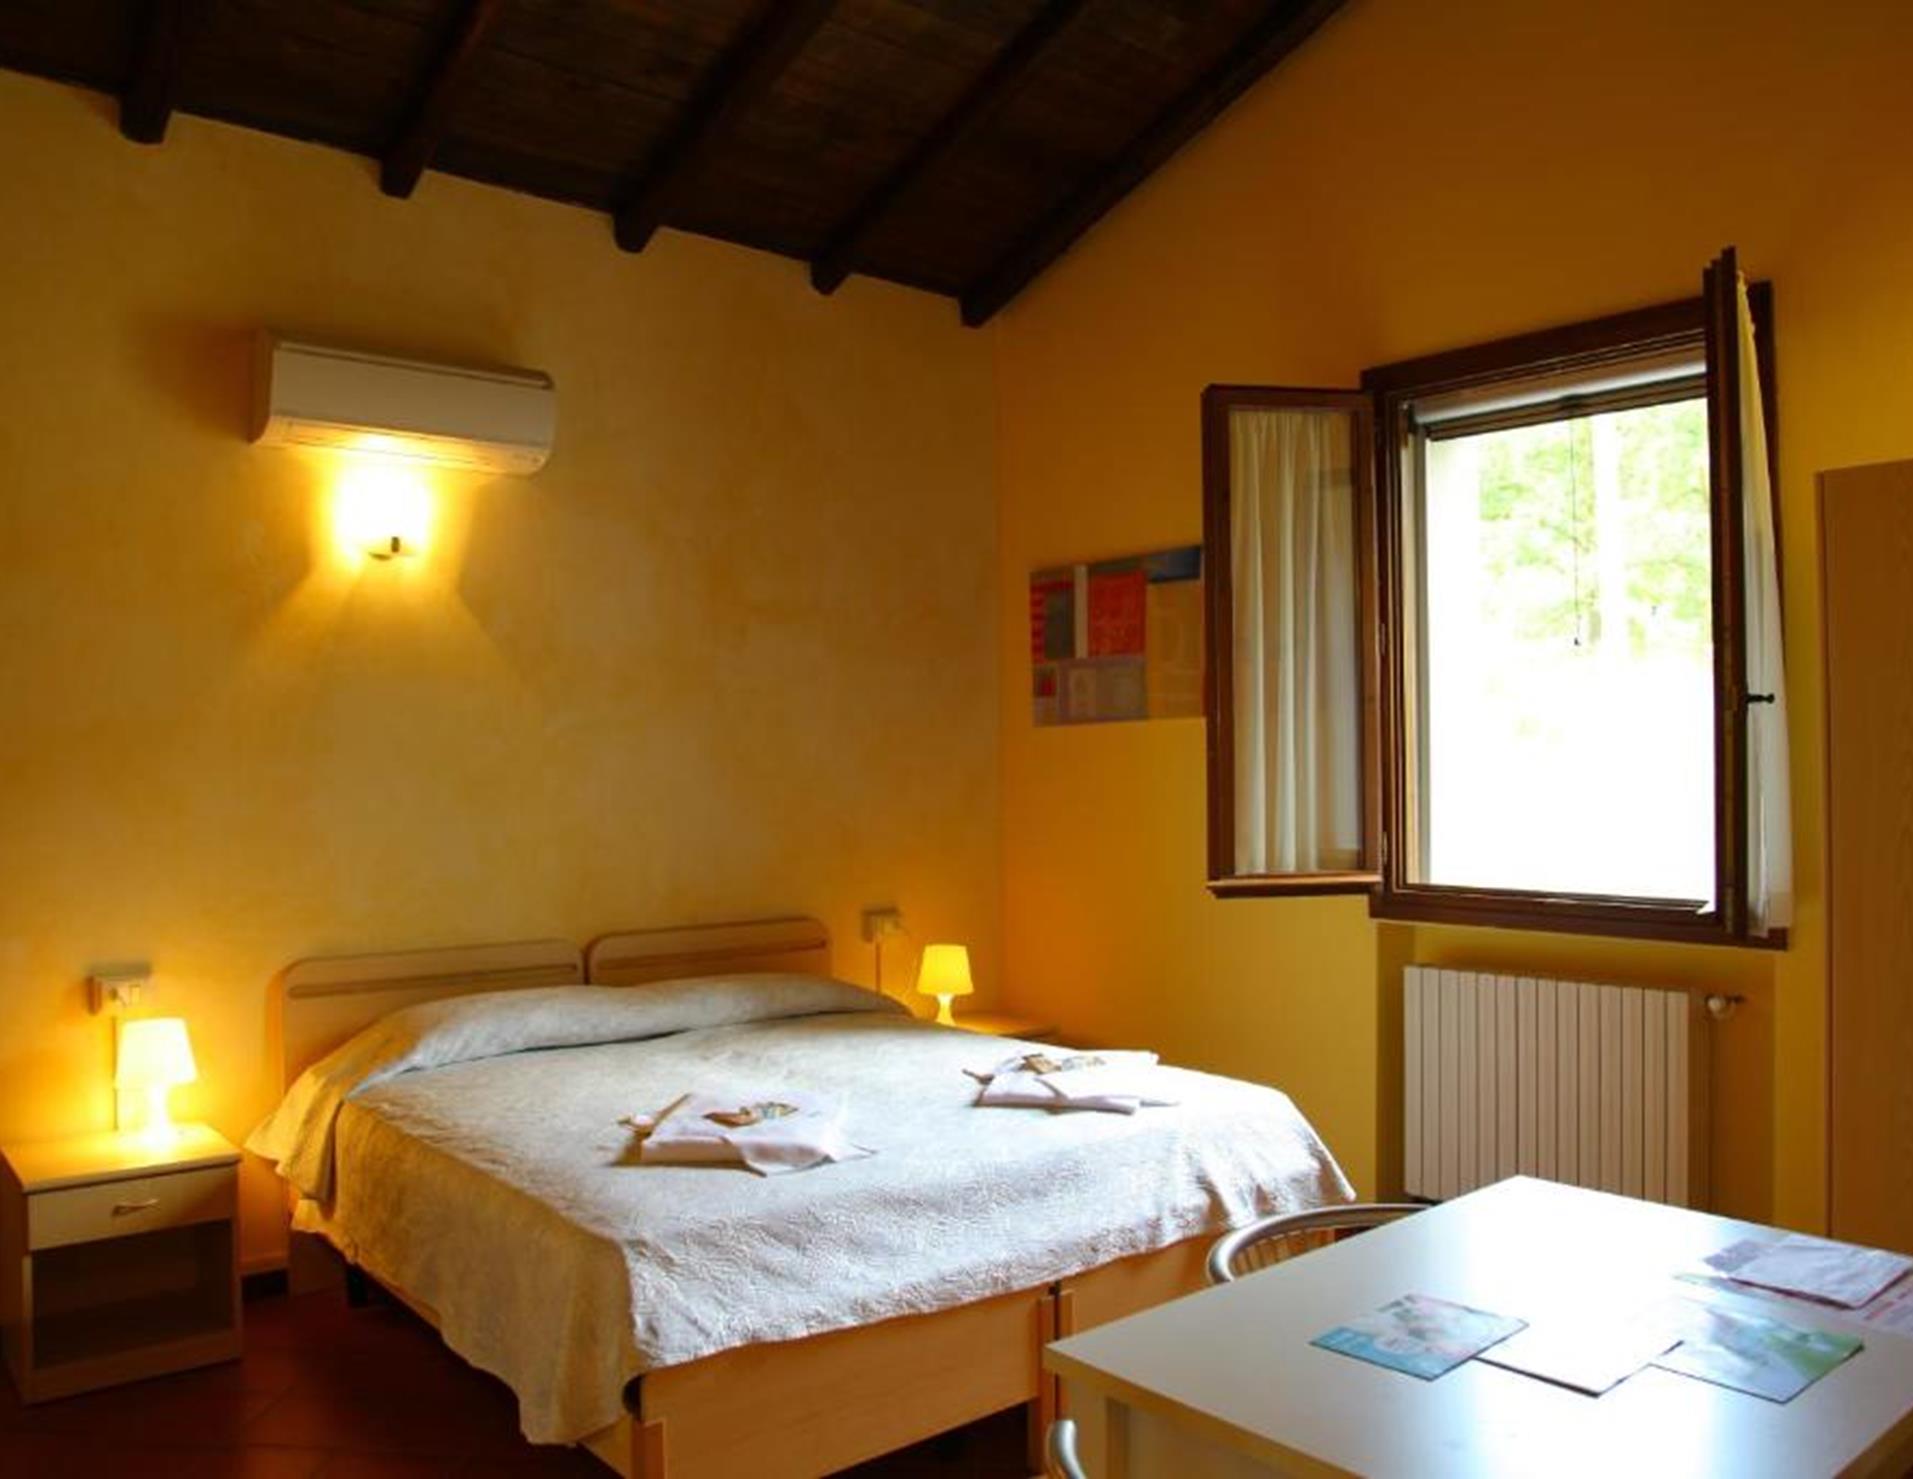 Villaggio Della Salute Piu - Room 2